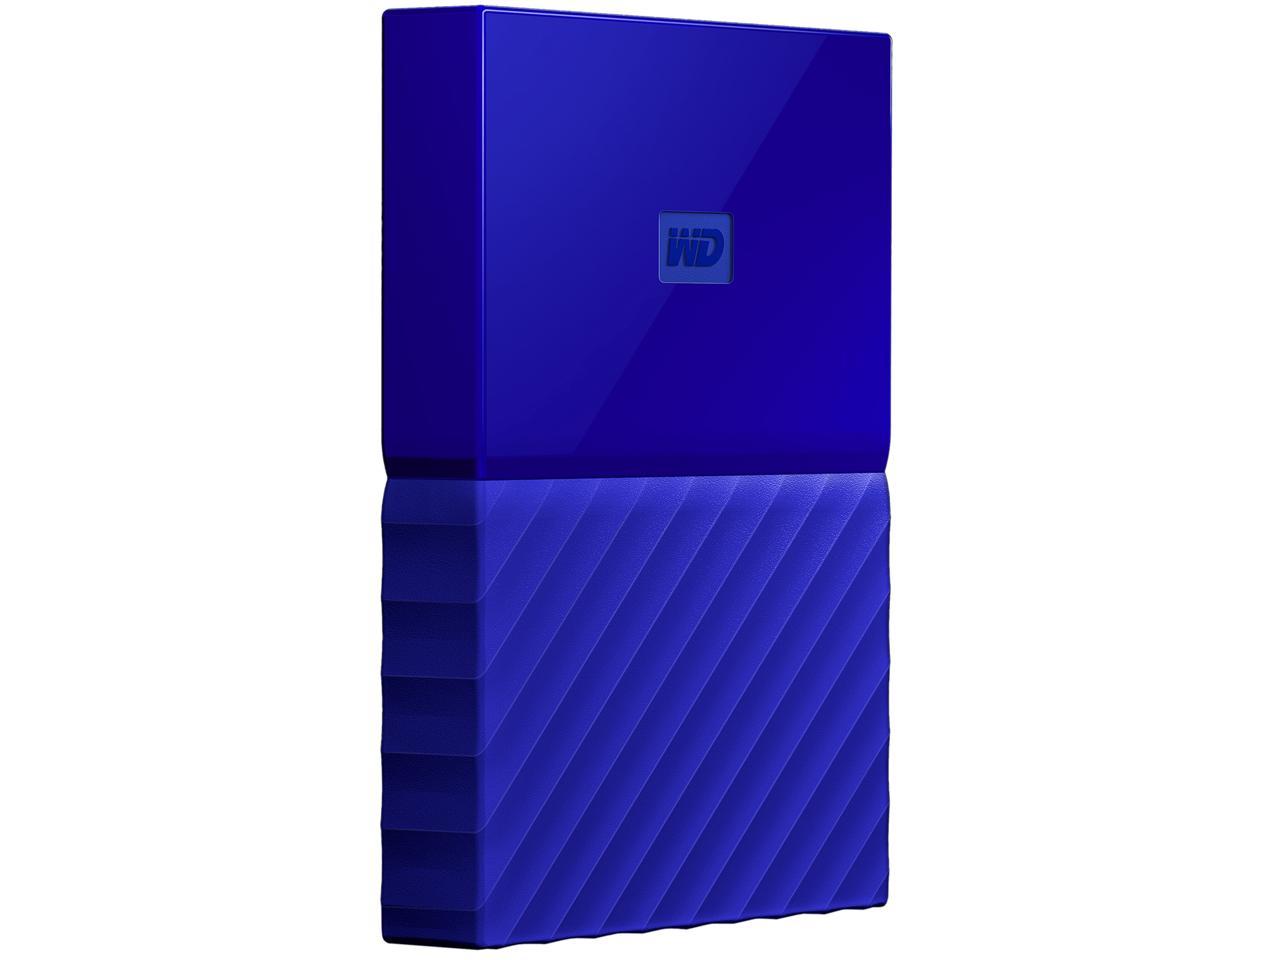 WD 1TB My Passport Portable Hard Drive USB 3.0 Model WDBYNN0010BBL-WESN Blue